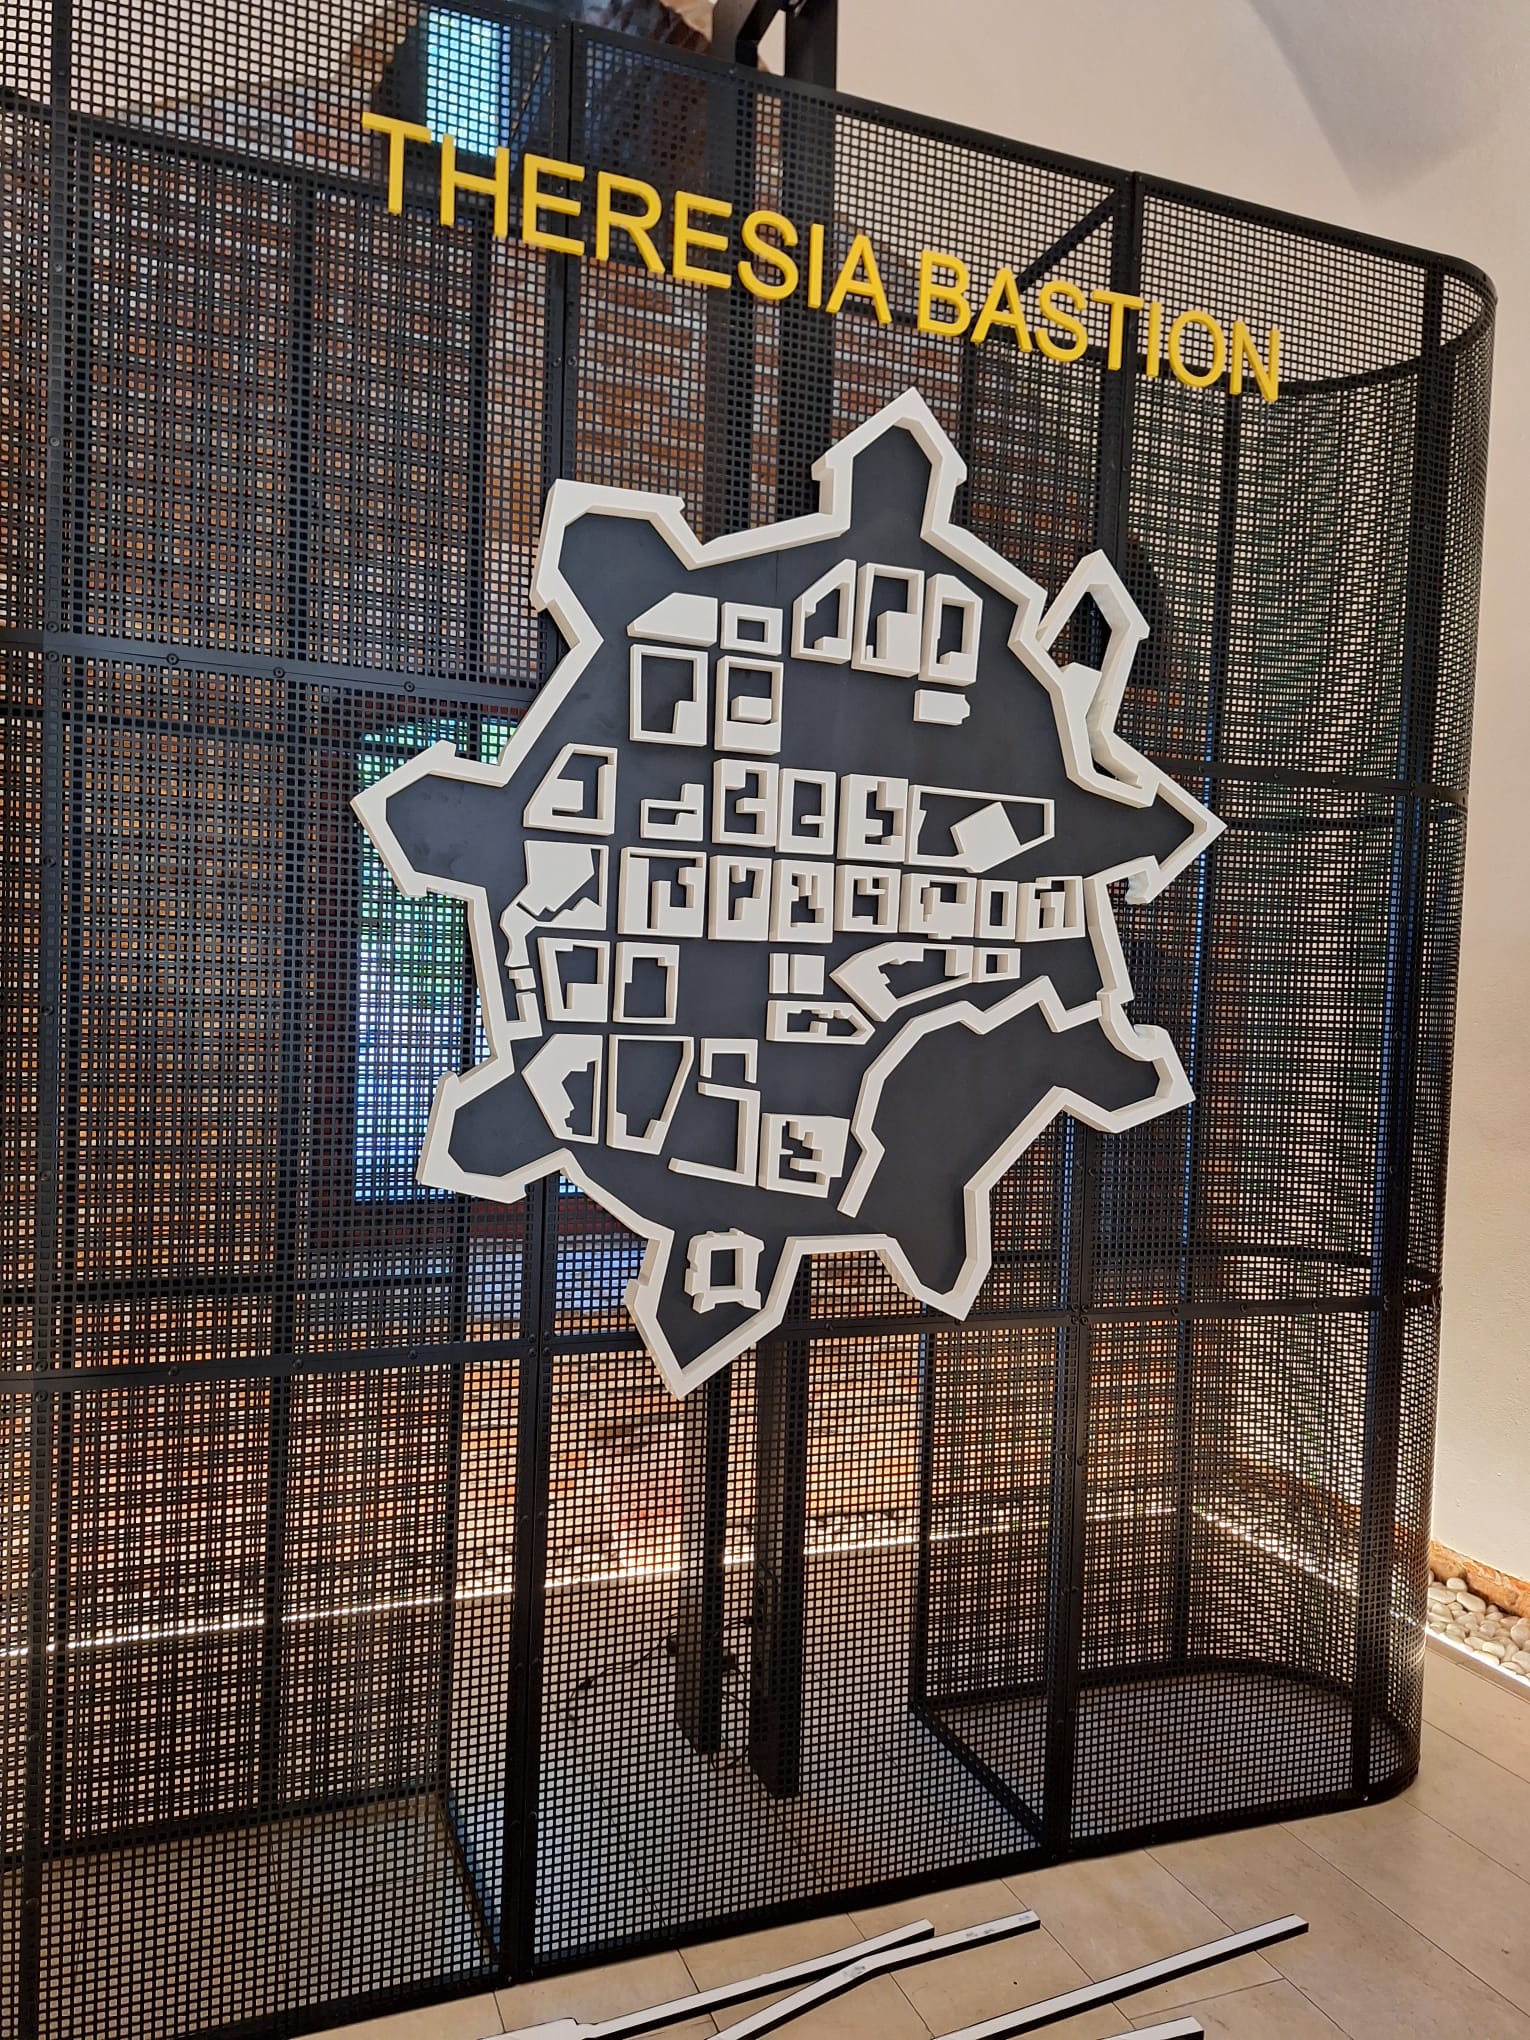 Centrului de informare turistică din Bastion (6)